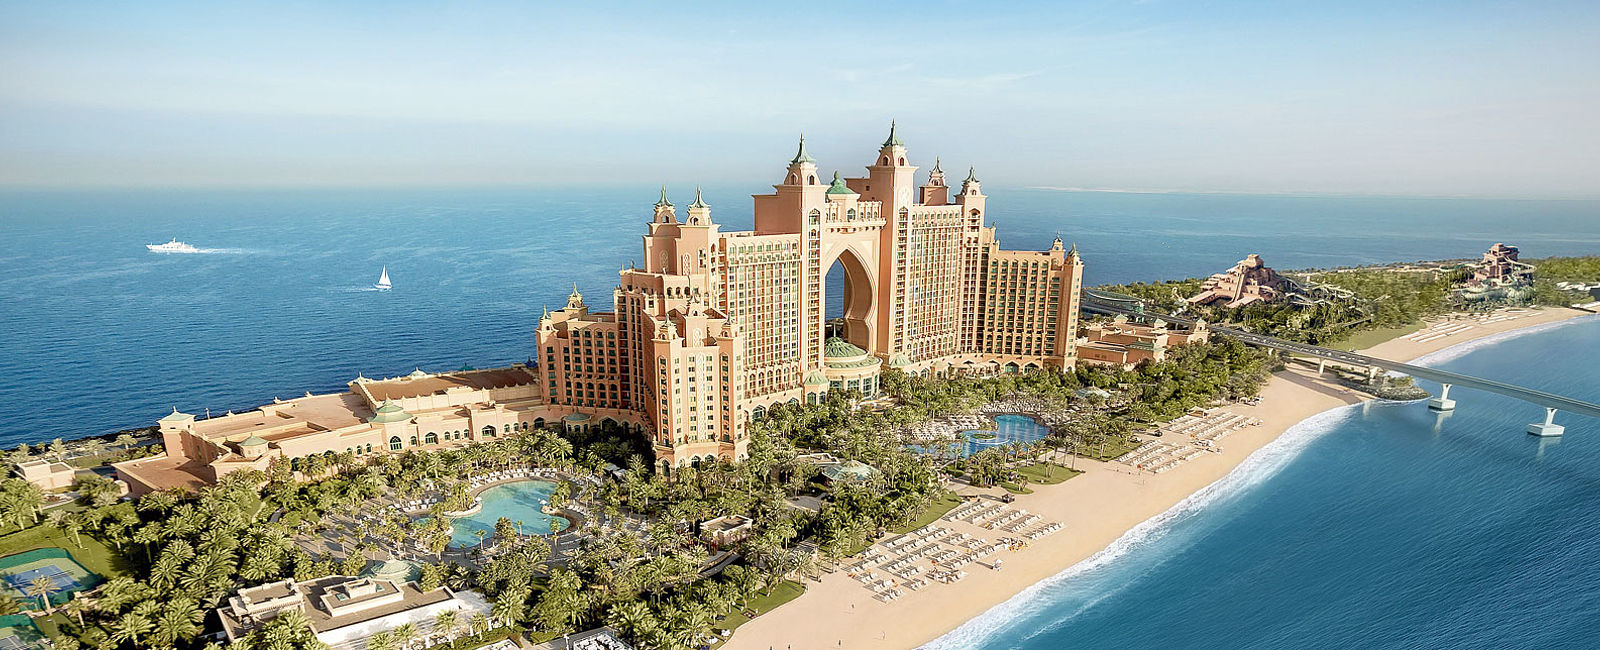 VERY SPECIAL HOTEL
 Atlantis, The Palm 
 Zu Gast auf der größten Palme der Welt 